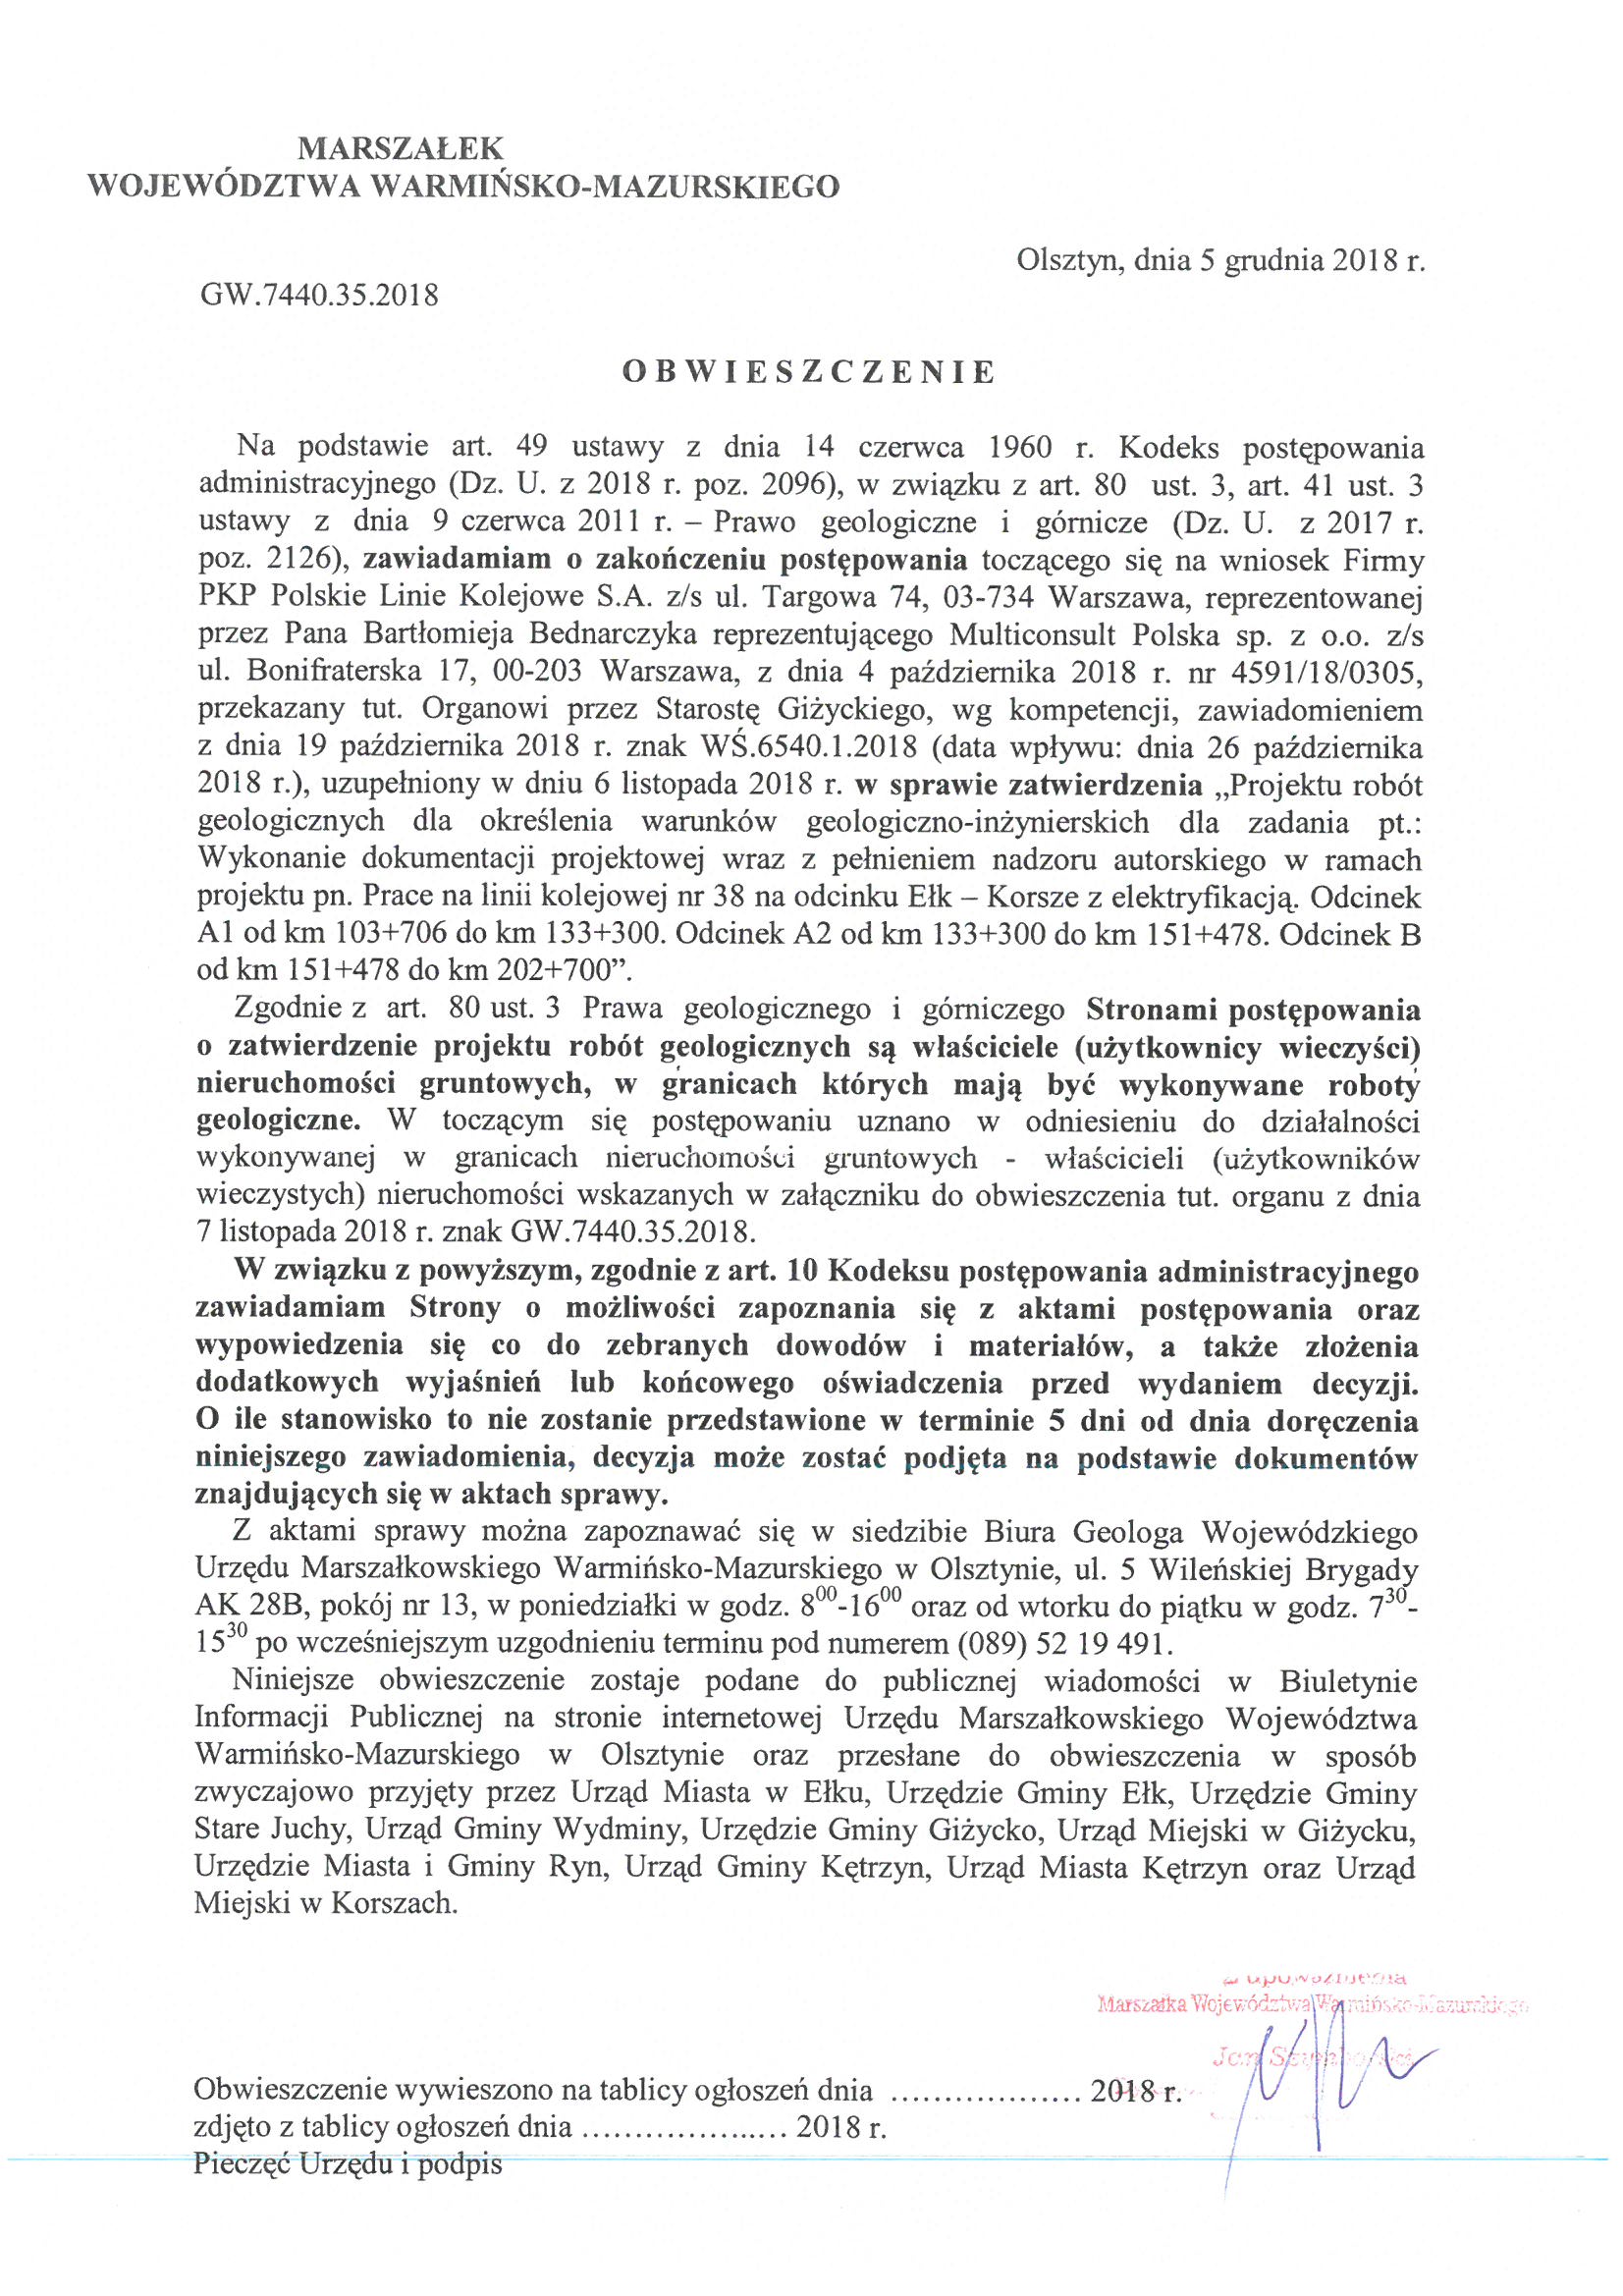 Obwieszczenie Marszałka Województwa Warmińsko-Mazurskiego